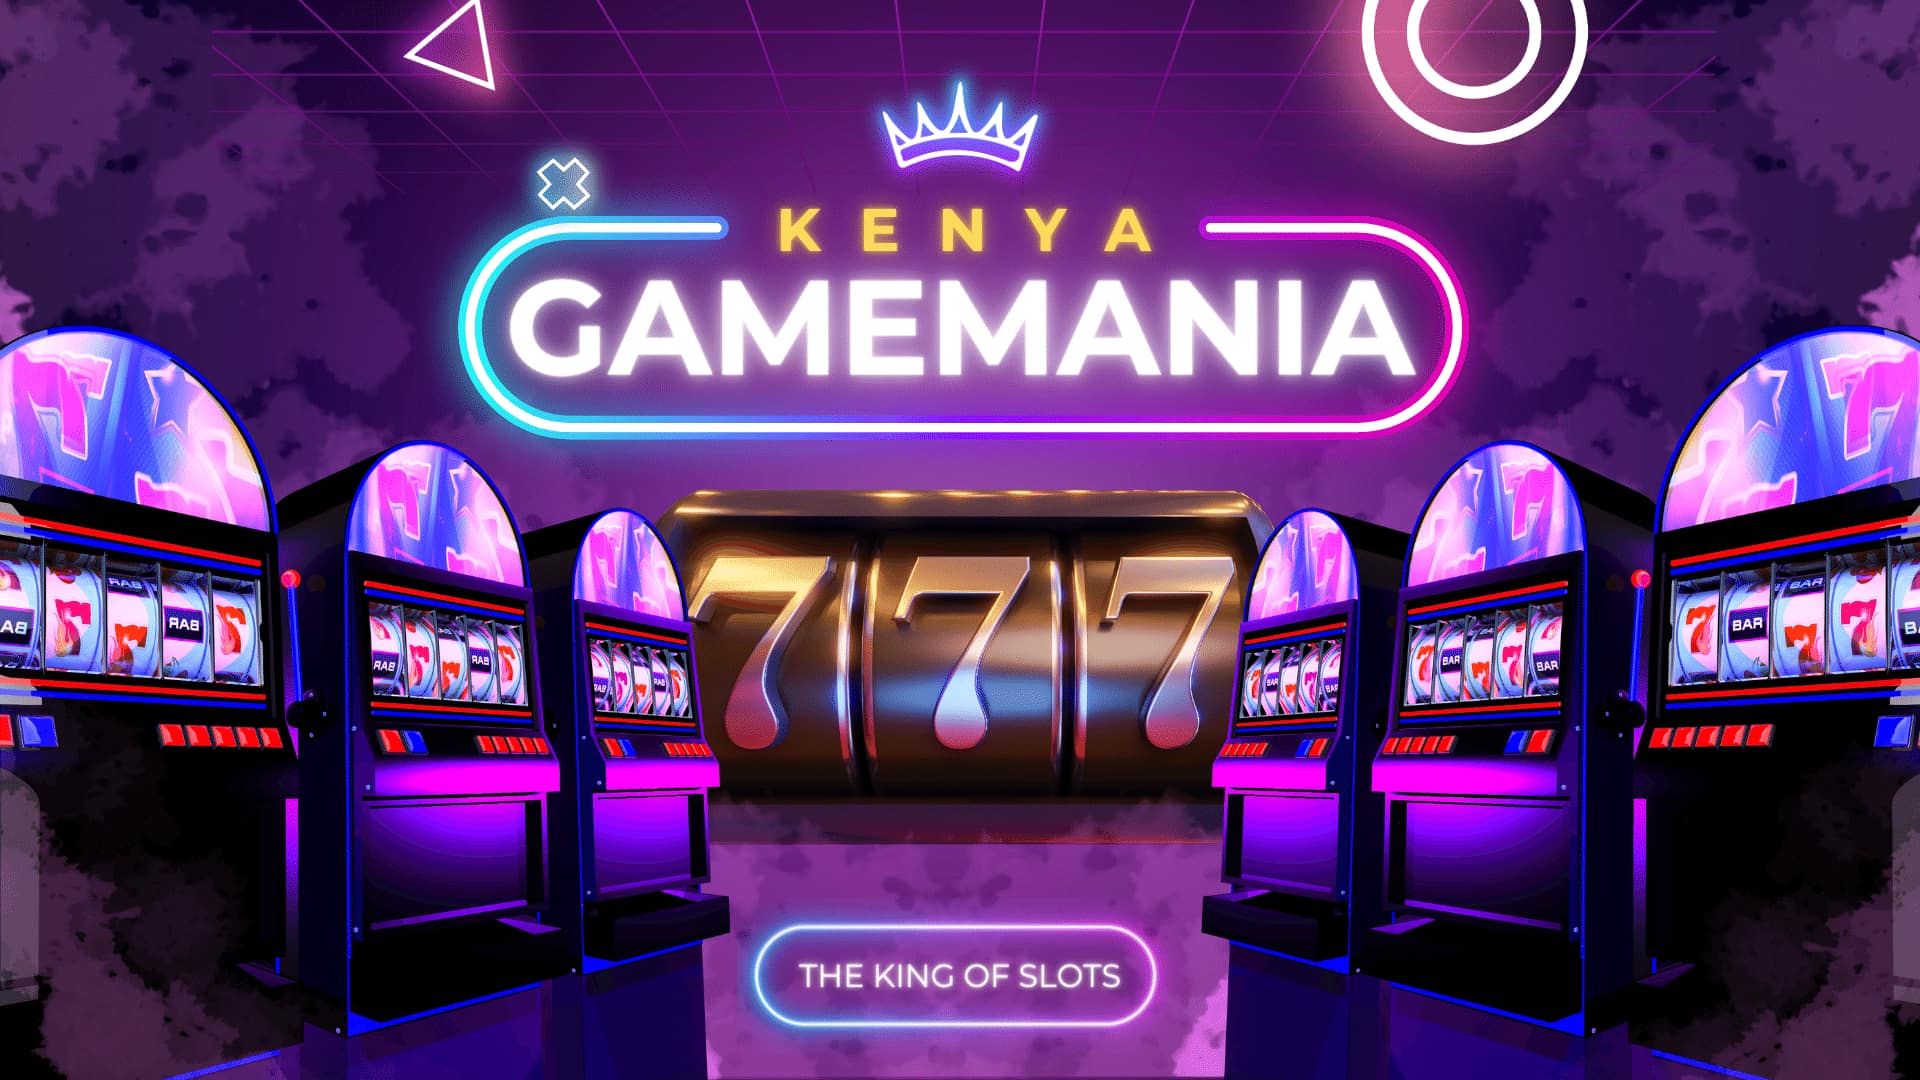 GameMania Kenya